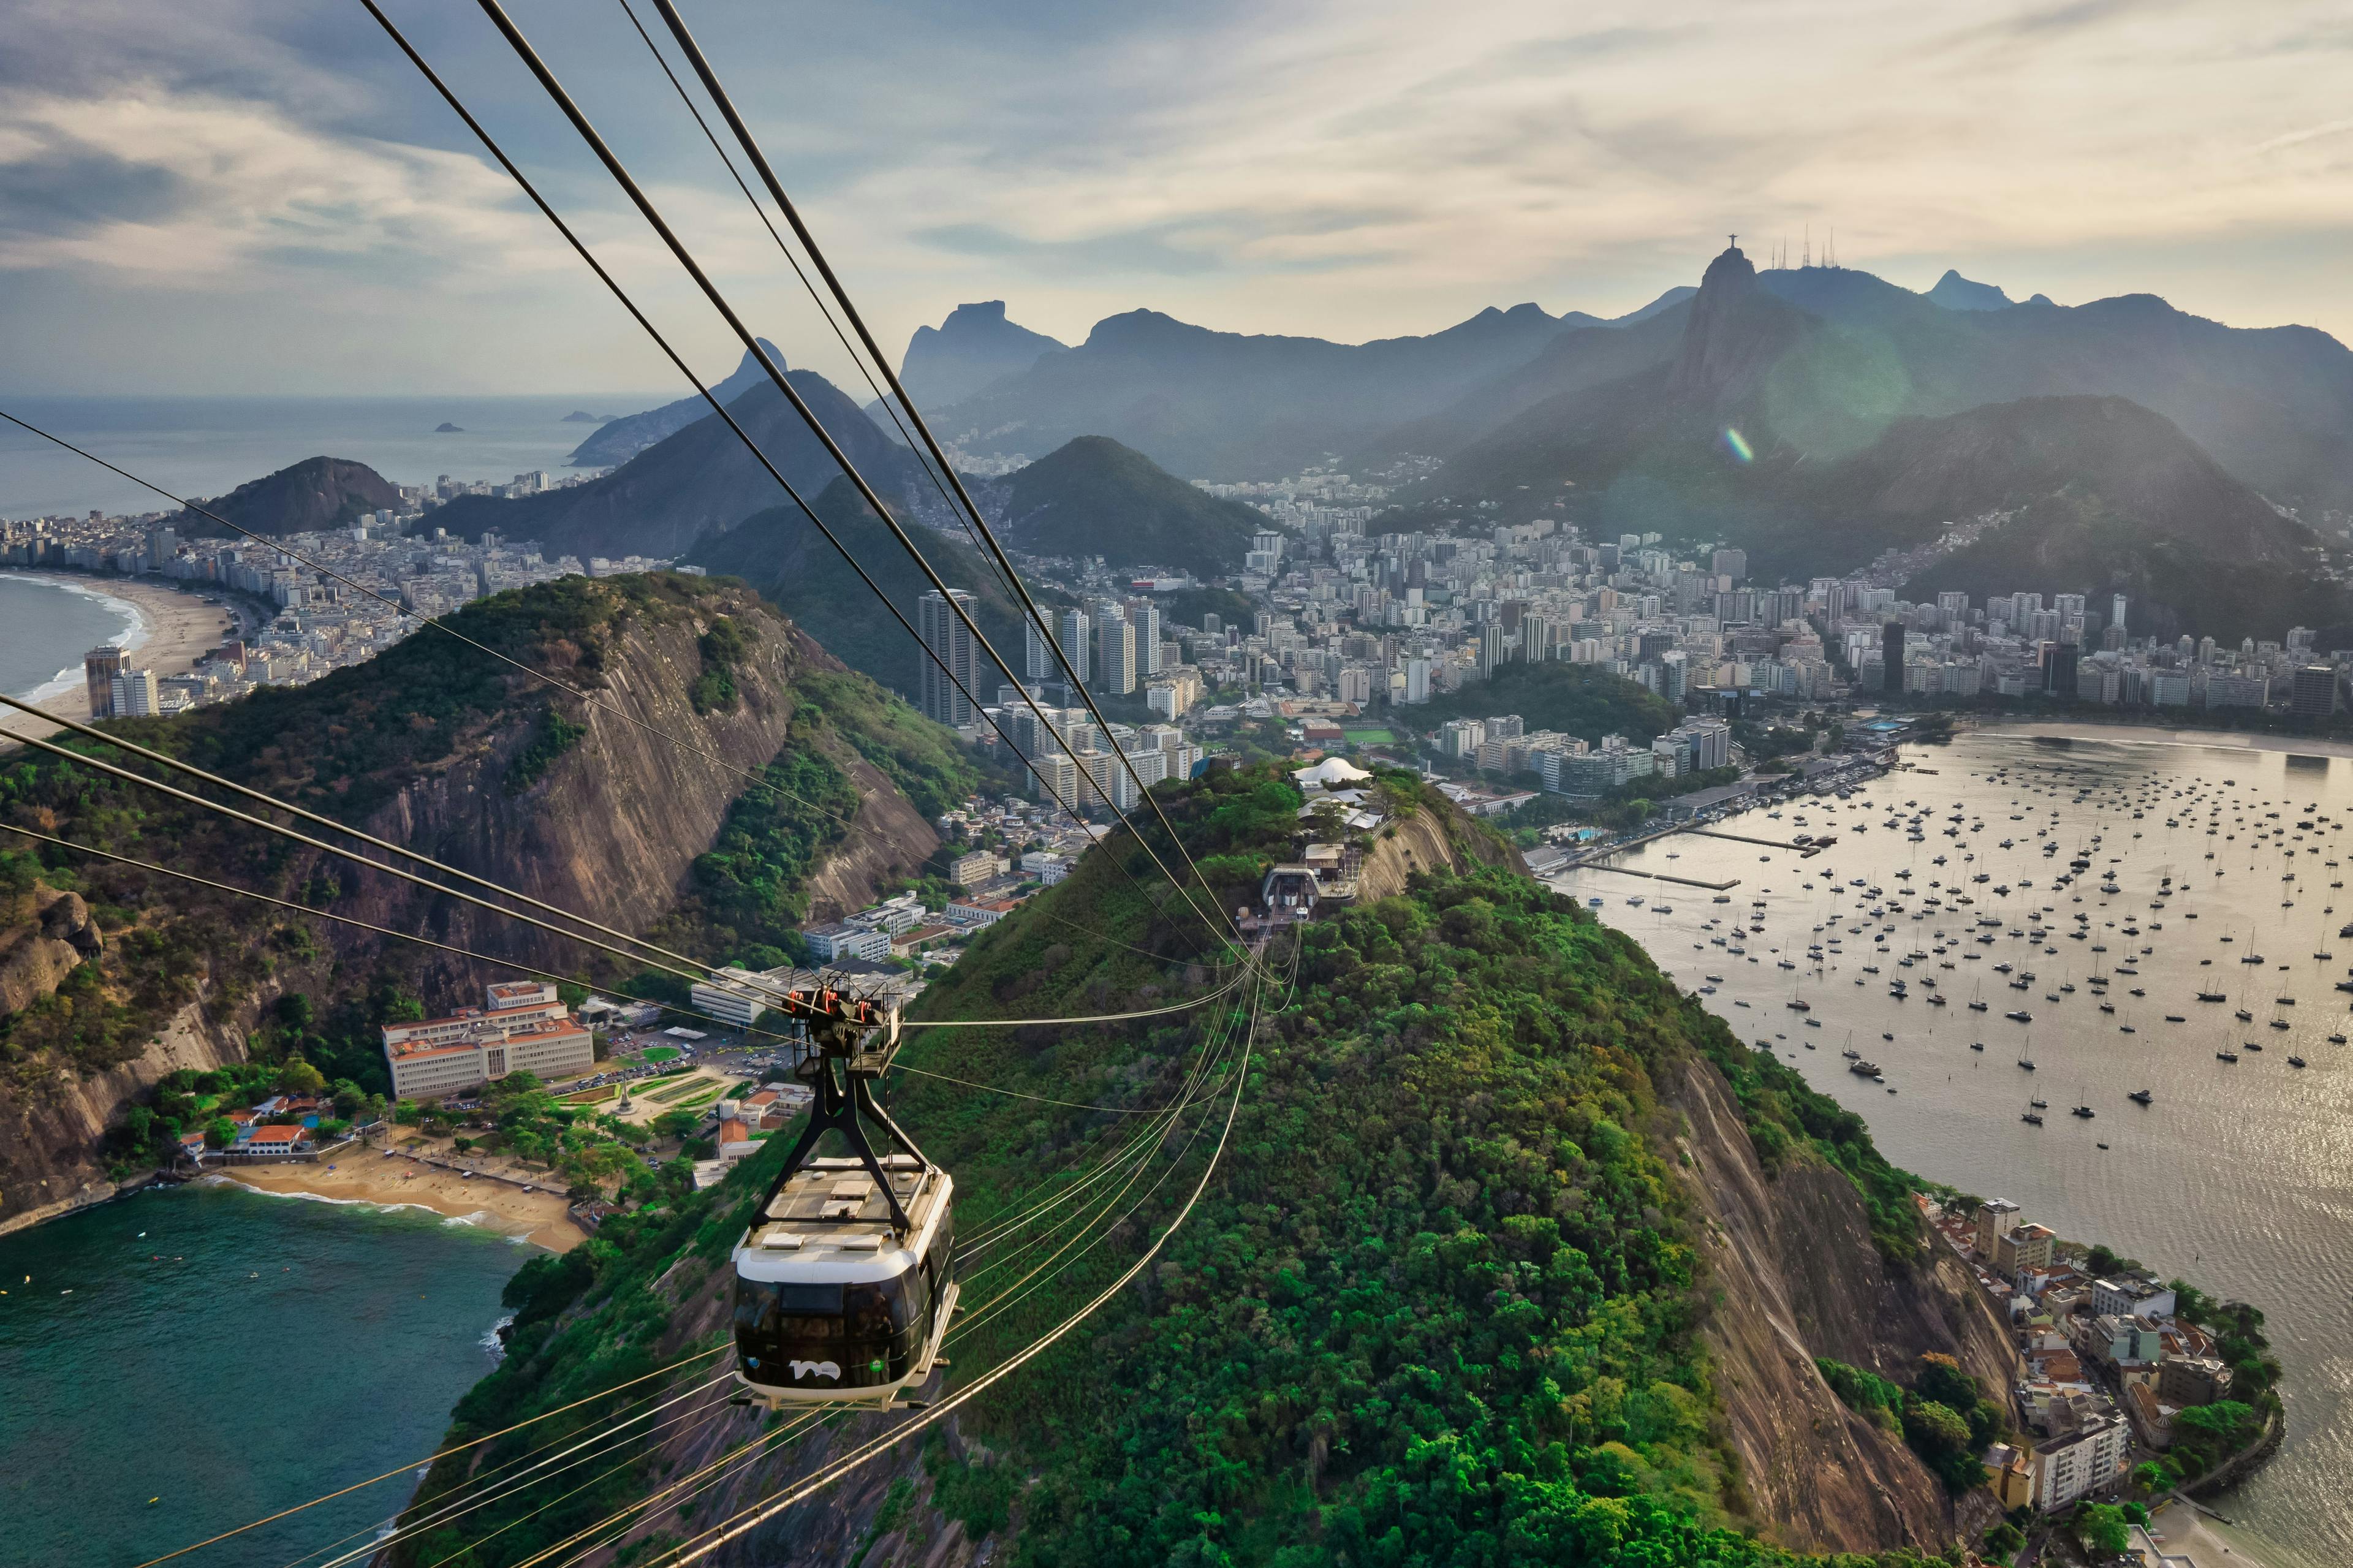 City of Rio de Janeiro beside lush green mountains and ocean